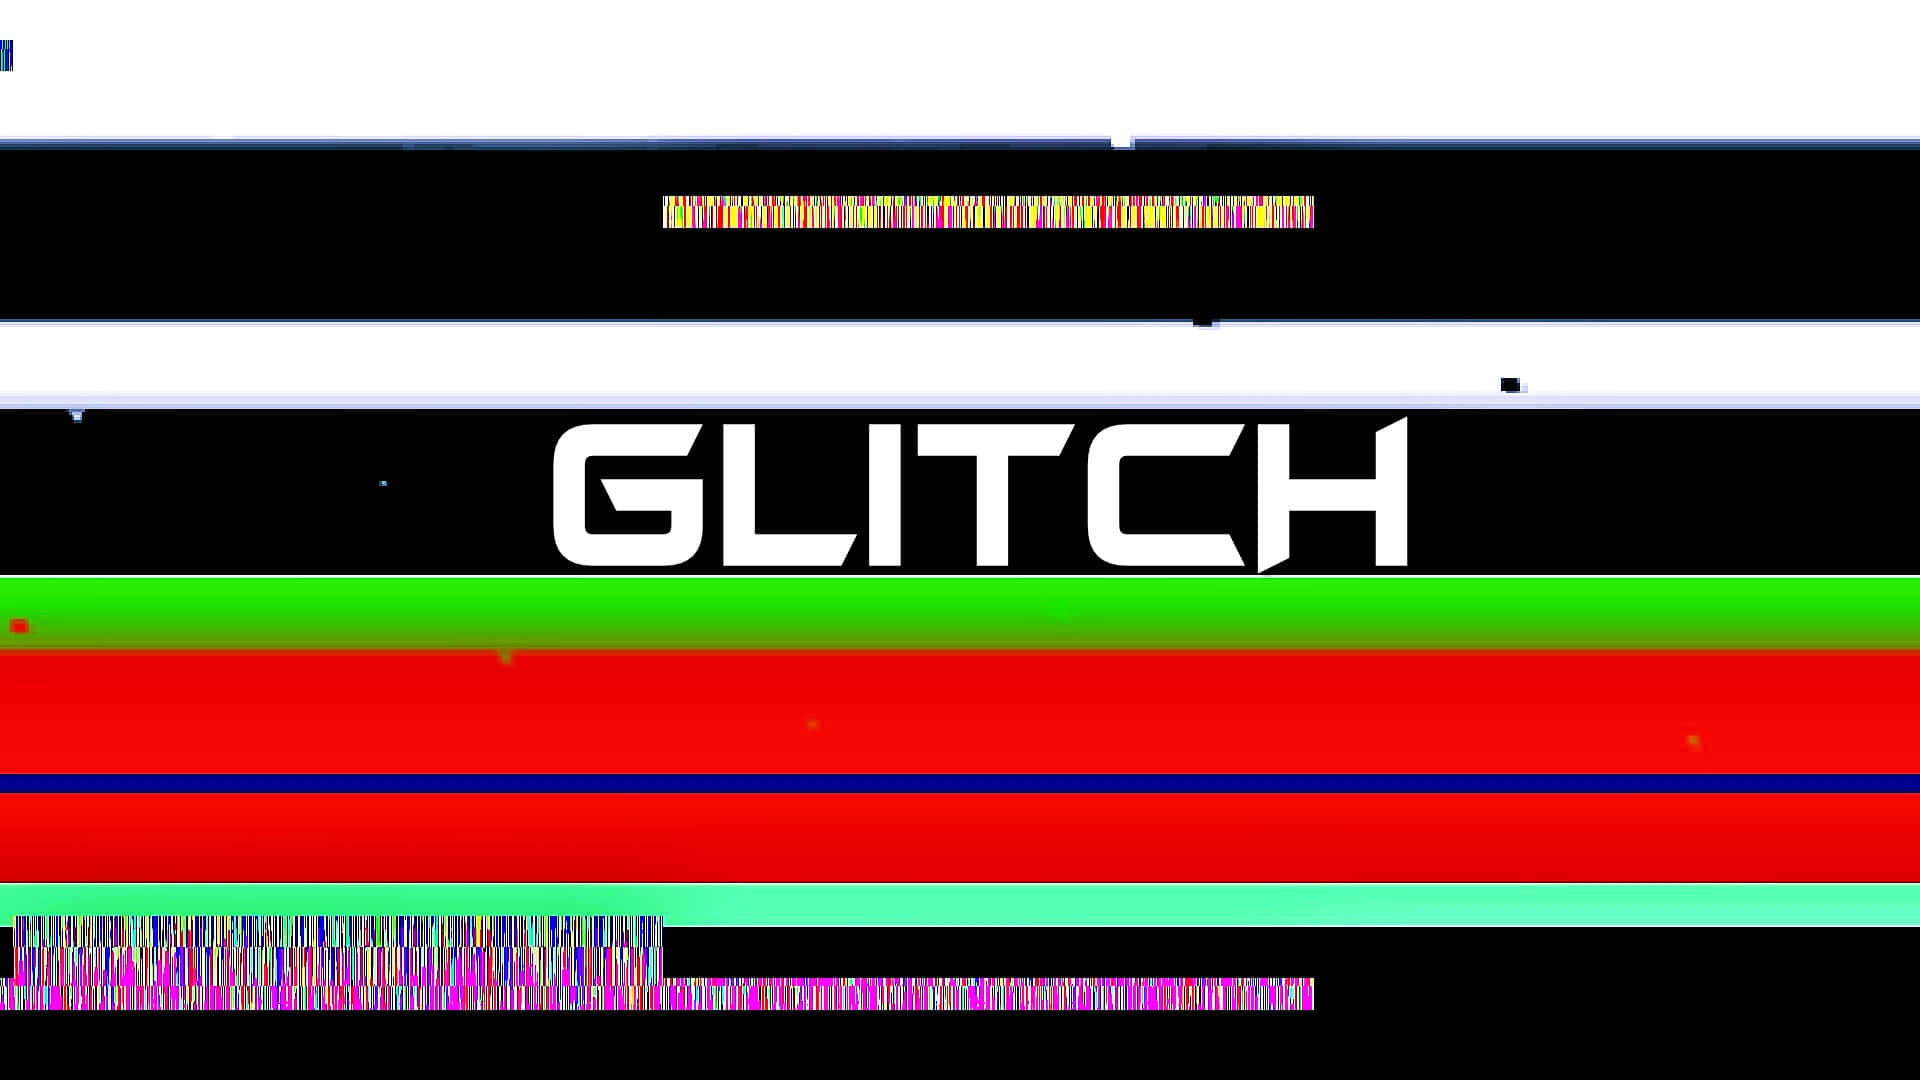 Digital Chaos - Glitch Effect Background